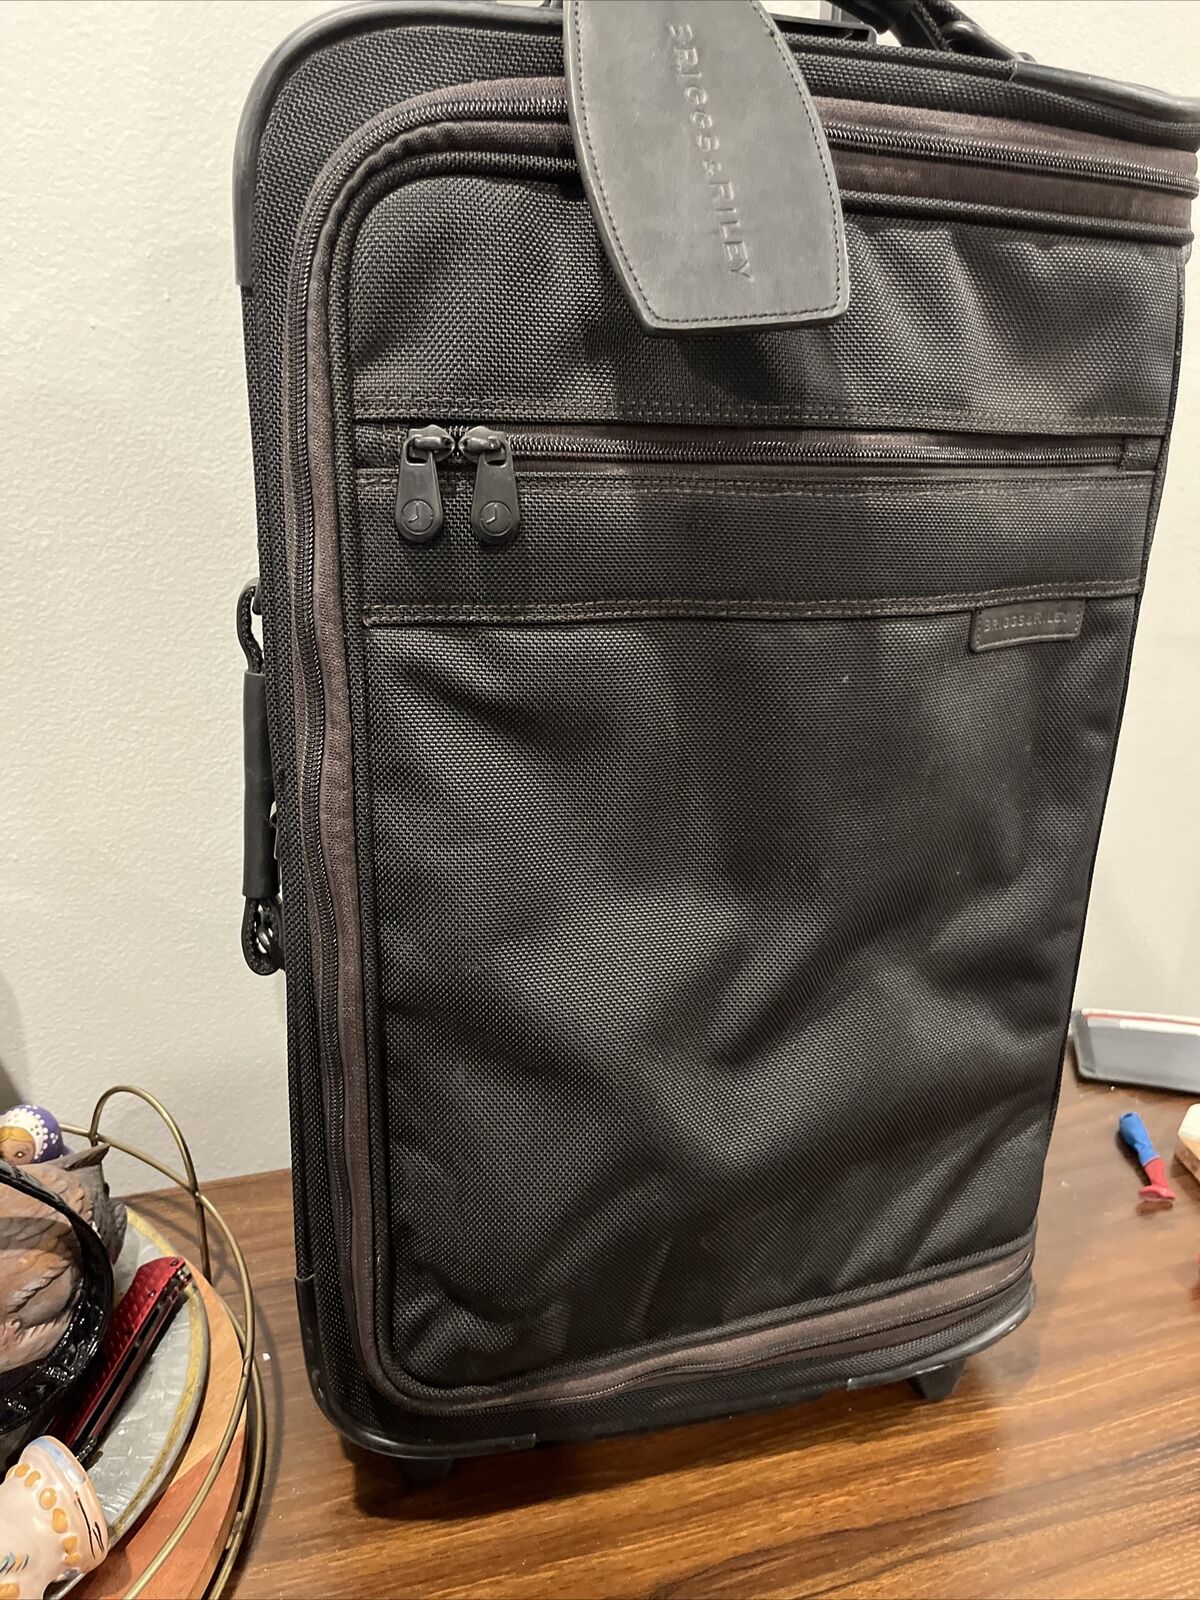 Briggs & Riley Baseline Domestic 21" CarryOn 2-wheel Suitcase Luggage